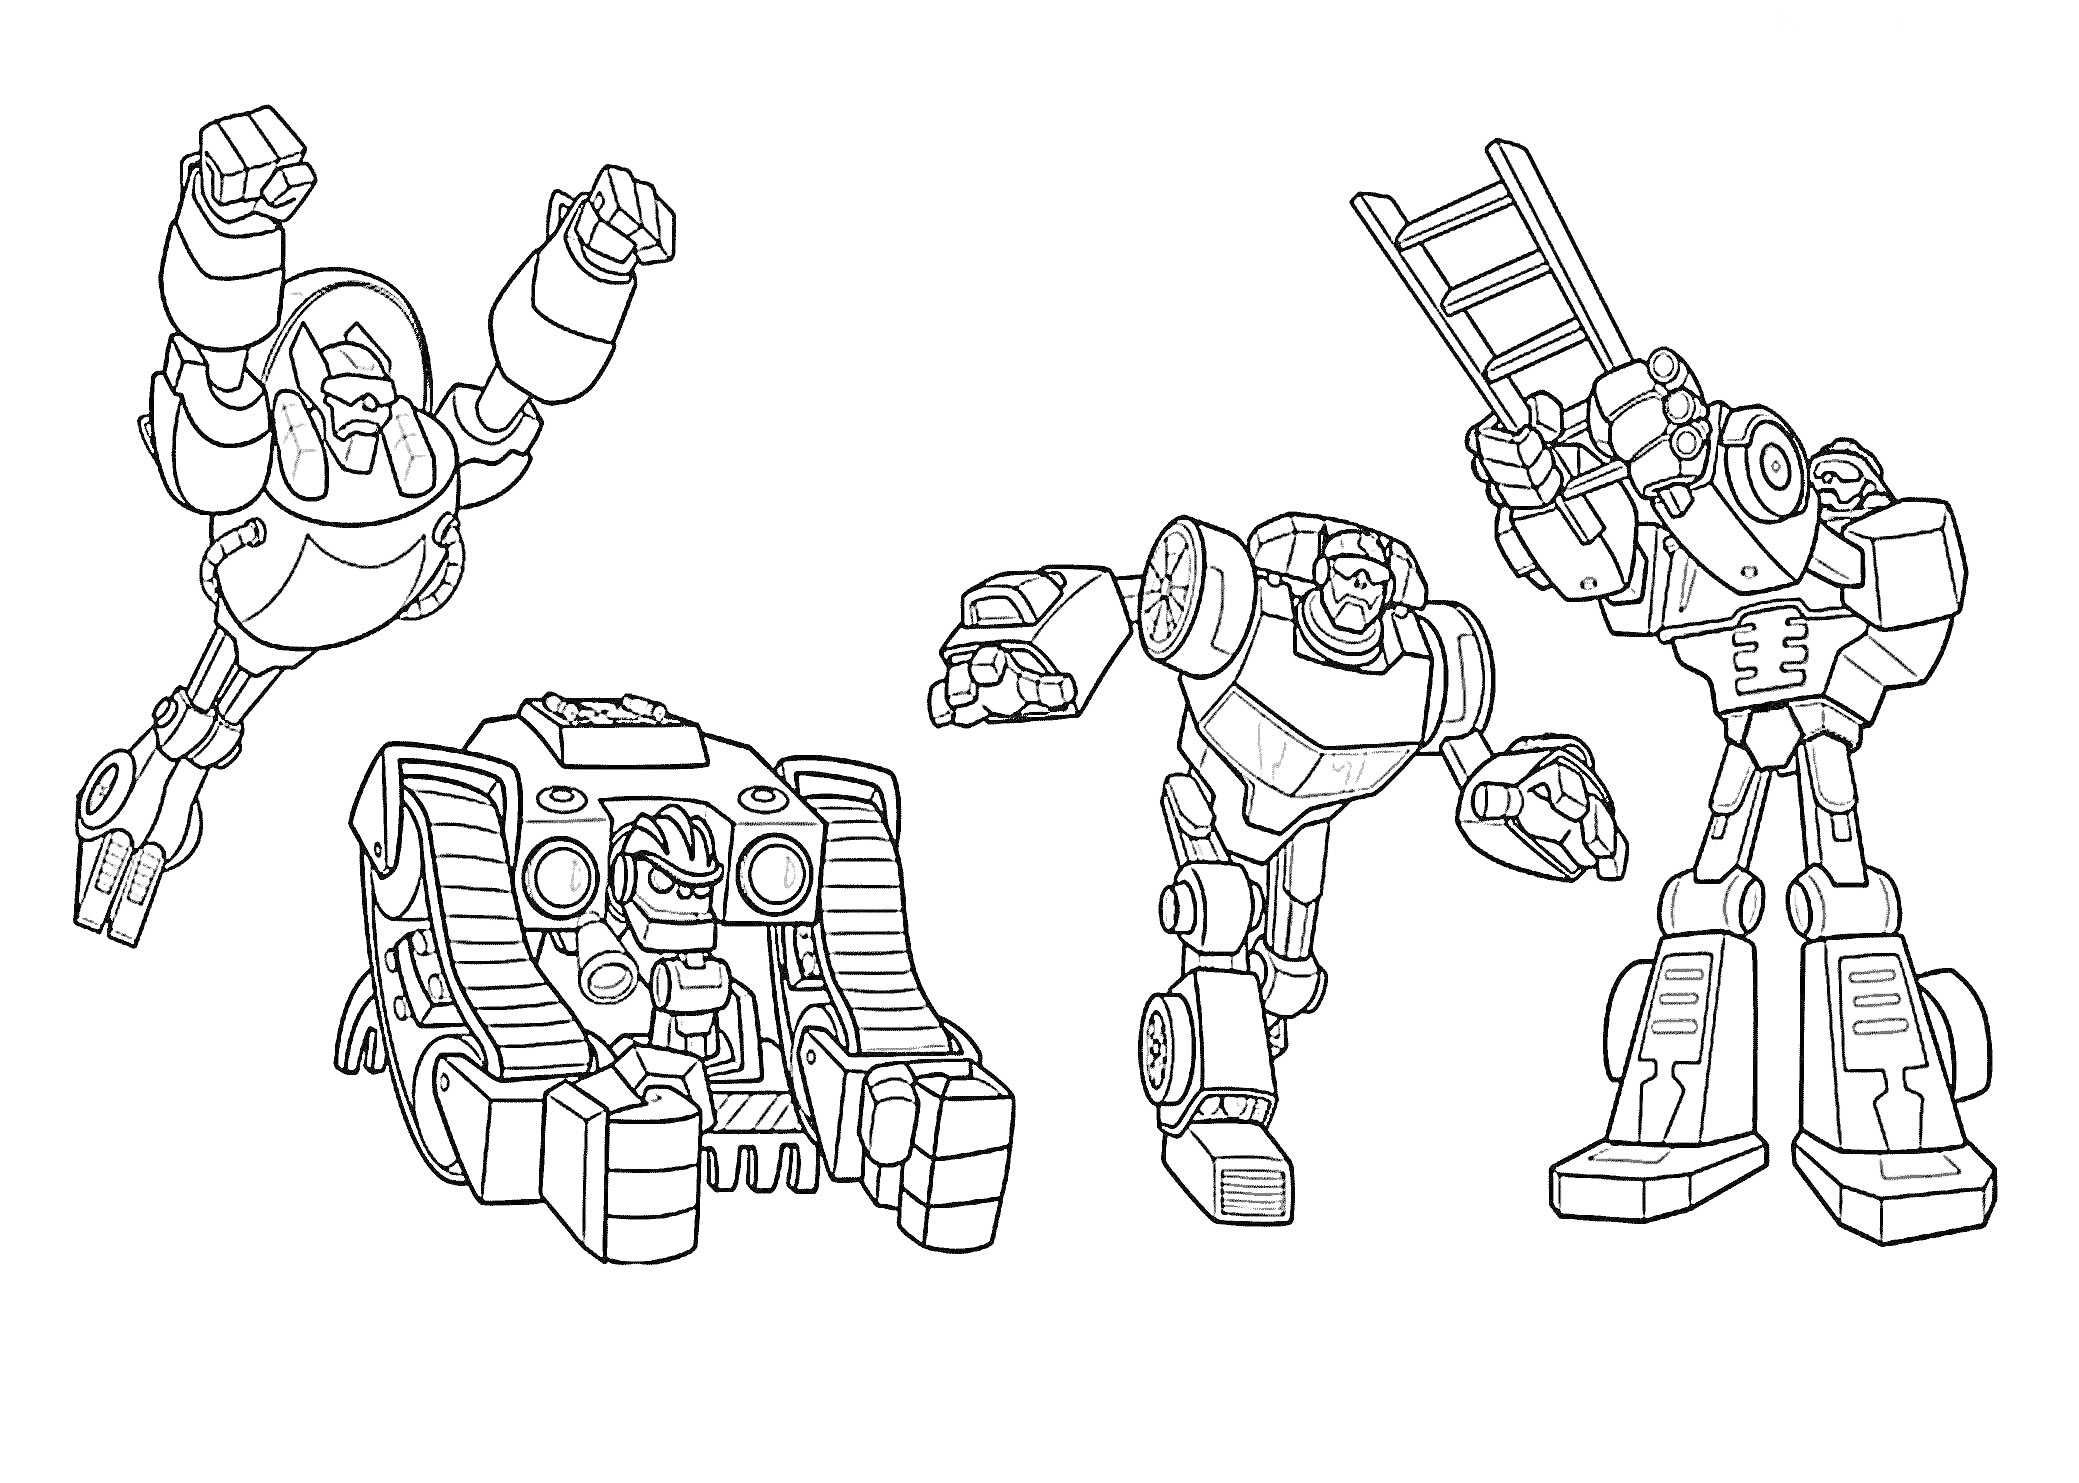 Четыре робота: робот, прыгающий с поднятыми руками; робот-гусеница с двумя глазами-лампочками; робот с согнутыми руками для удара; робот с лестницей вместо одной руки